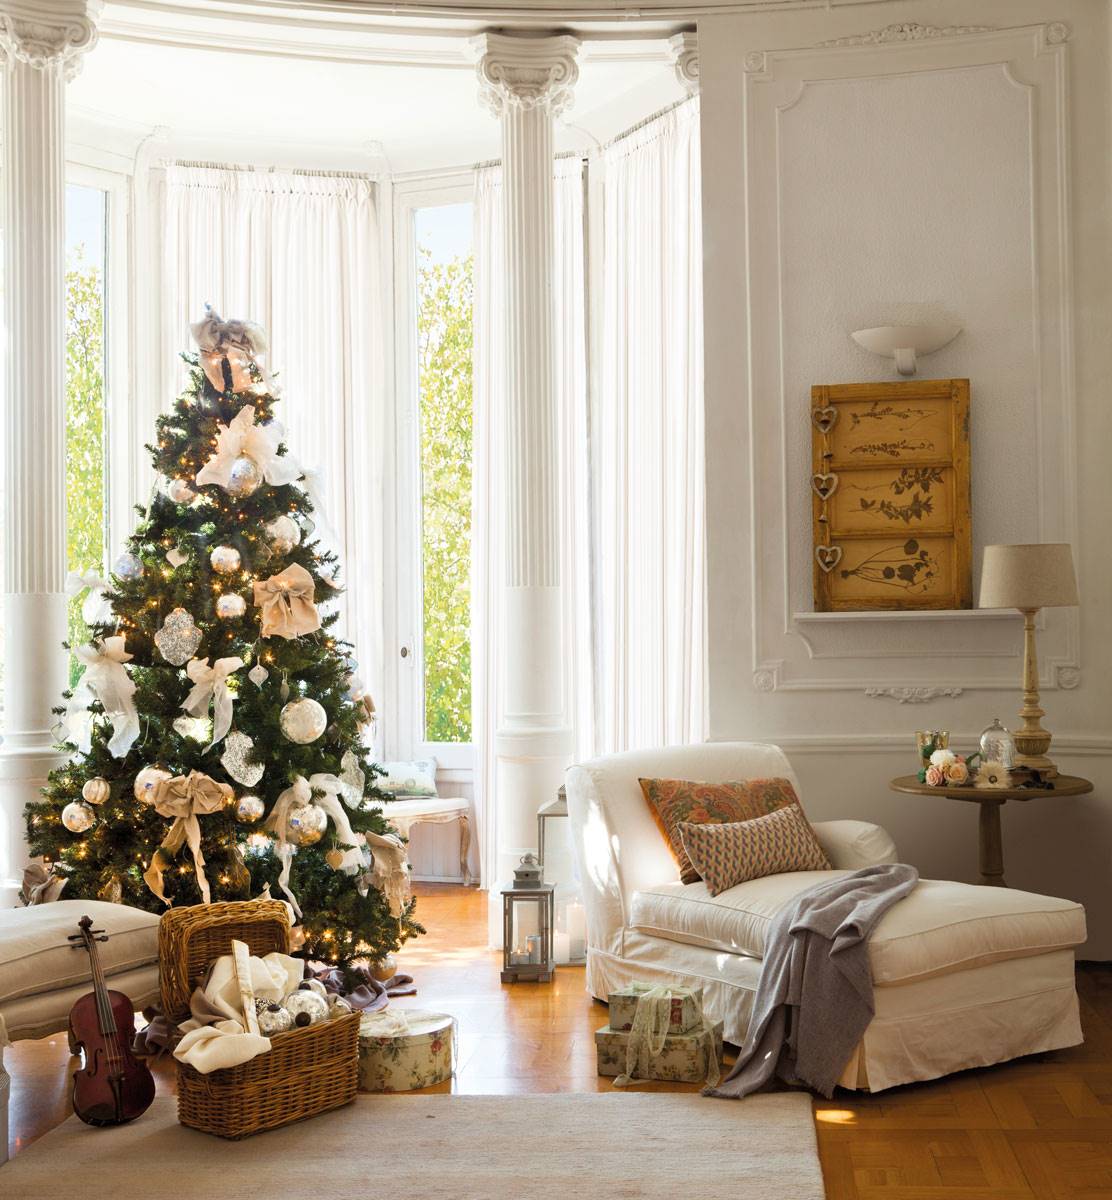 Salón clásico de NAvidad con chaiseliongue y árbol